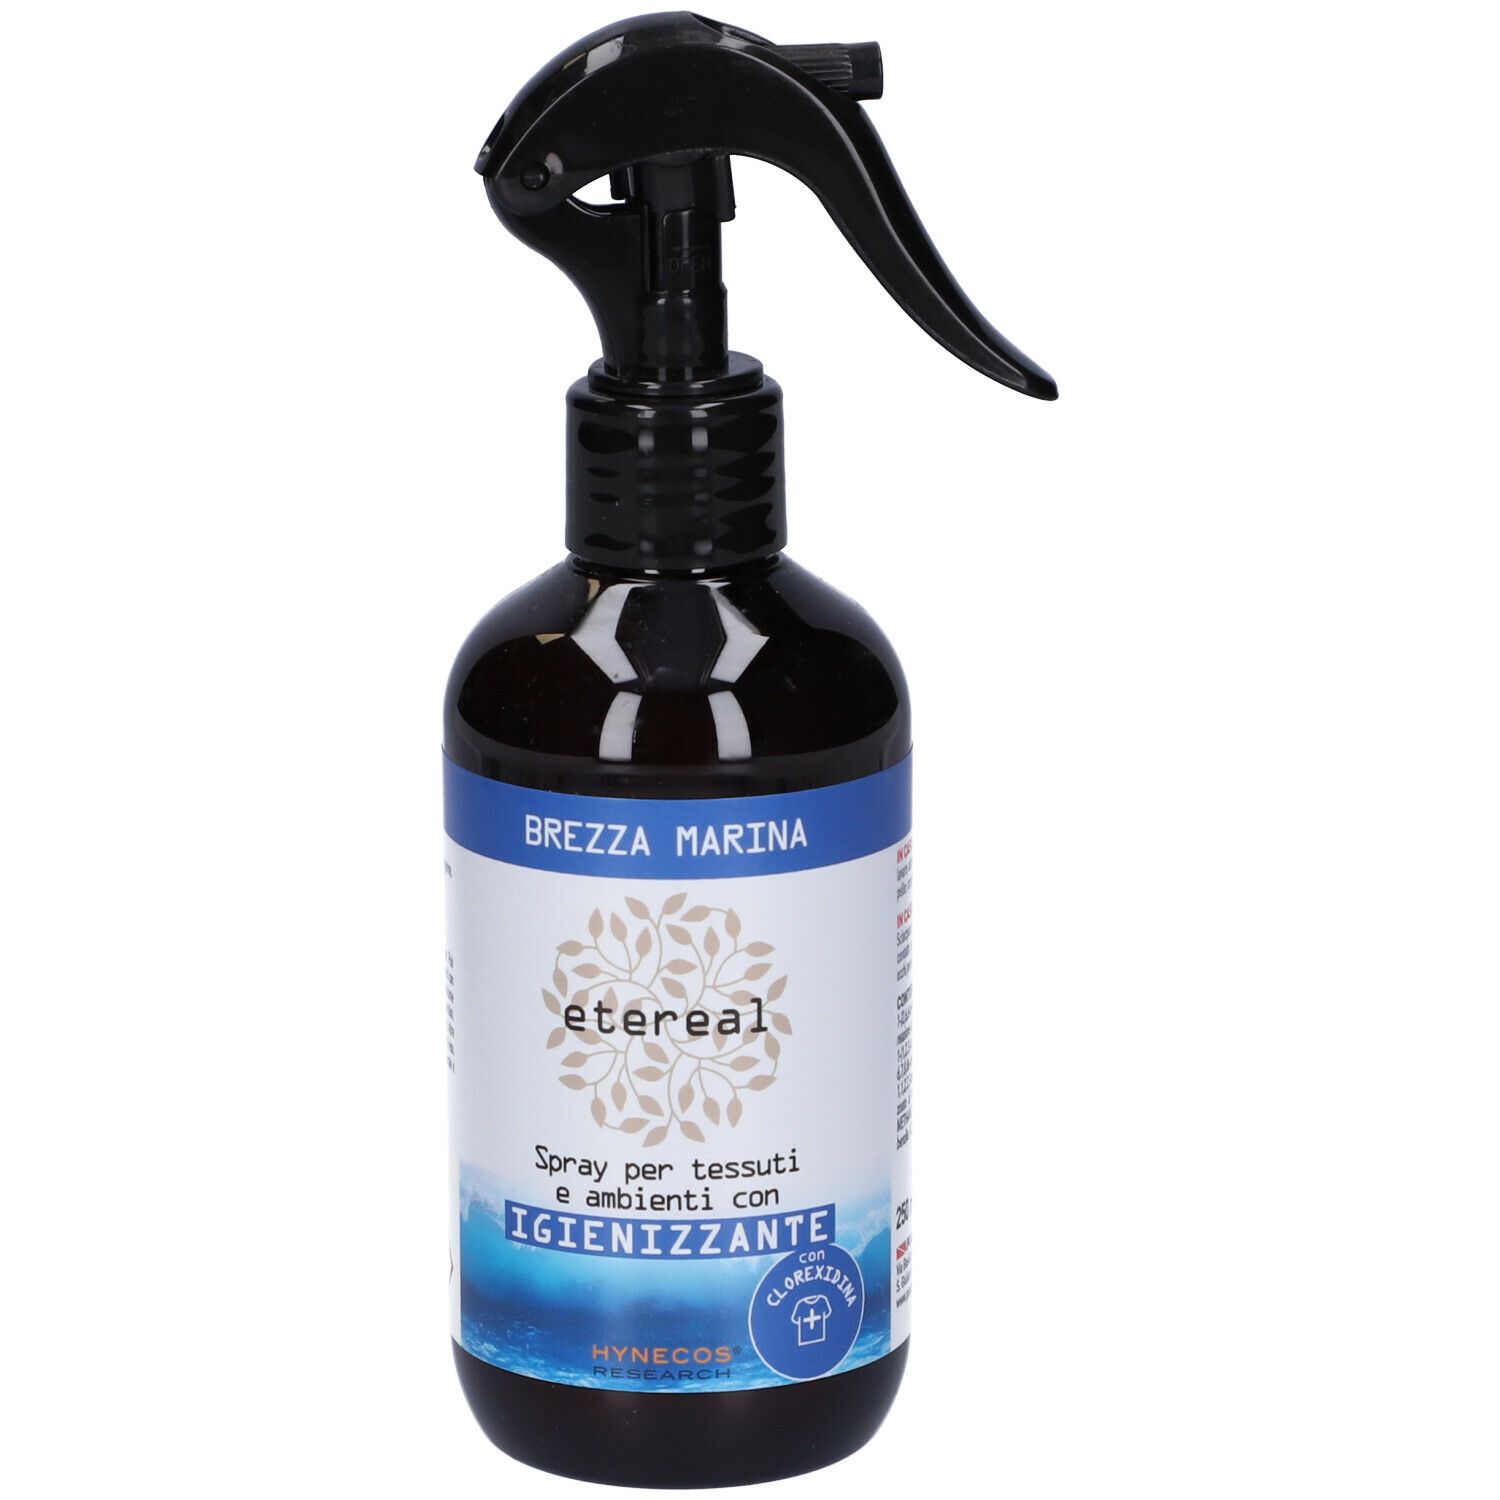 Etereal Spray Per Tessuti E Ambienti Igienizzante Brezza Marina